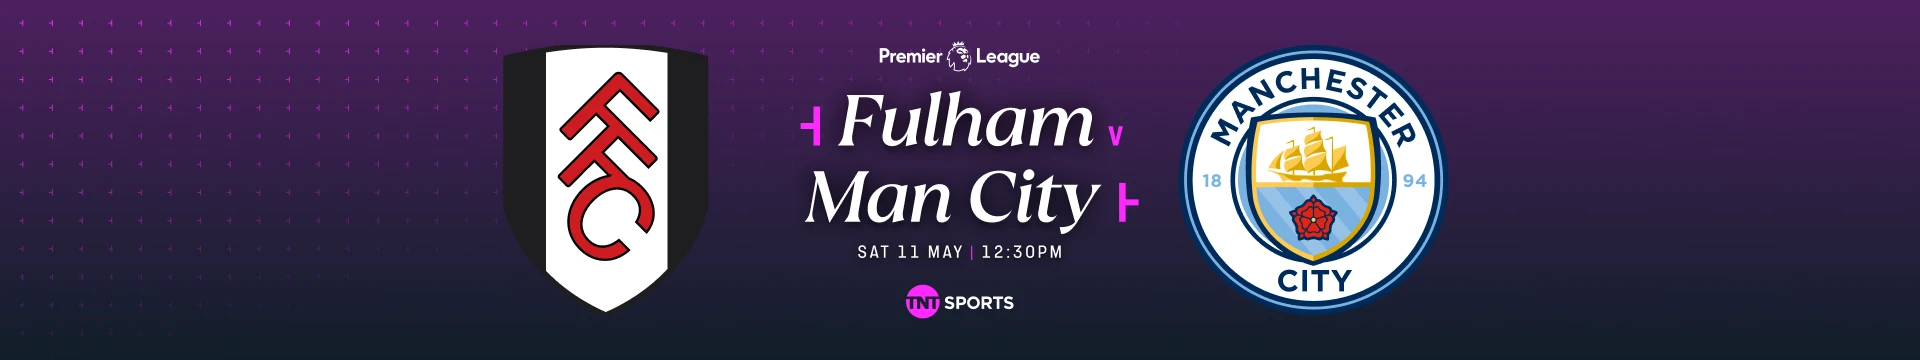 Fulham v Man City Saturday 11 May at 12:30pm